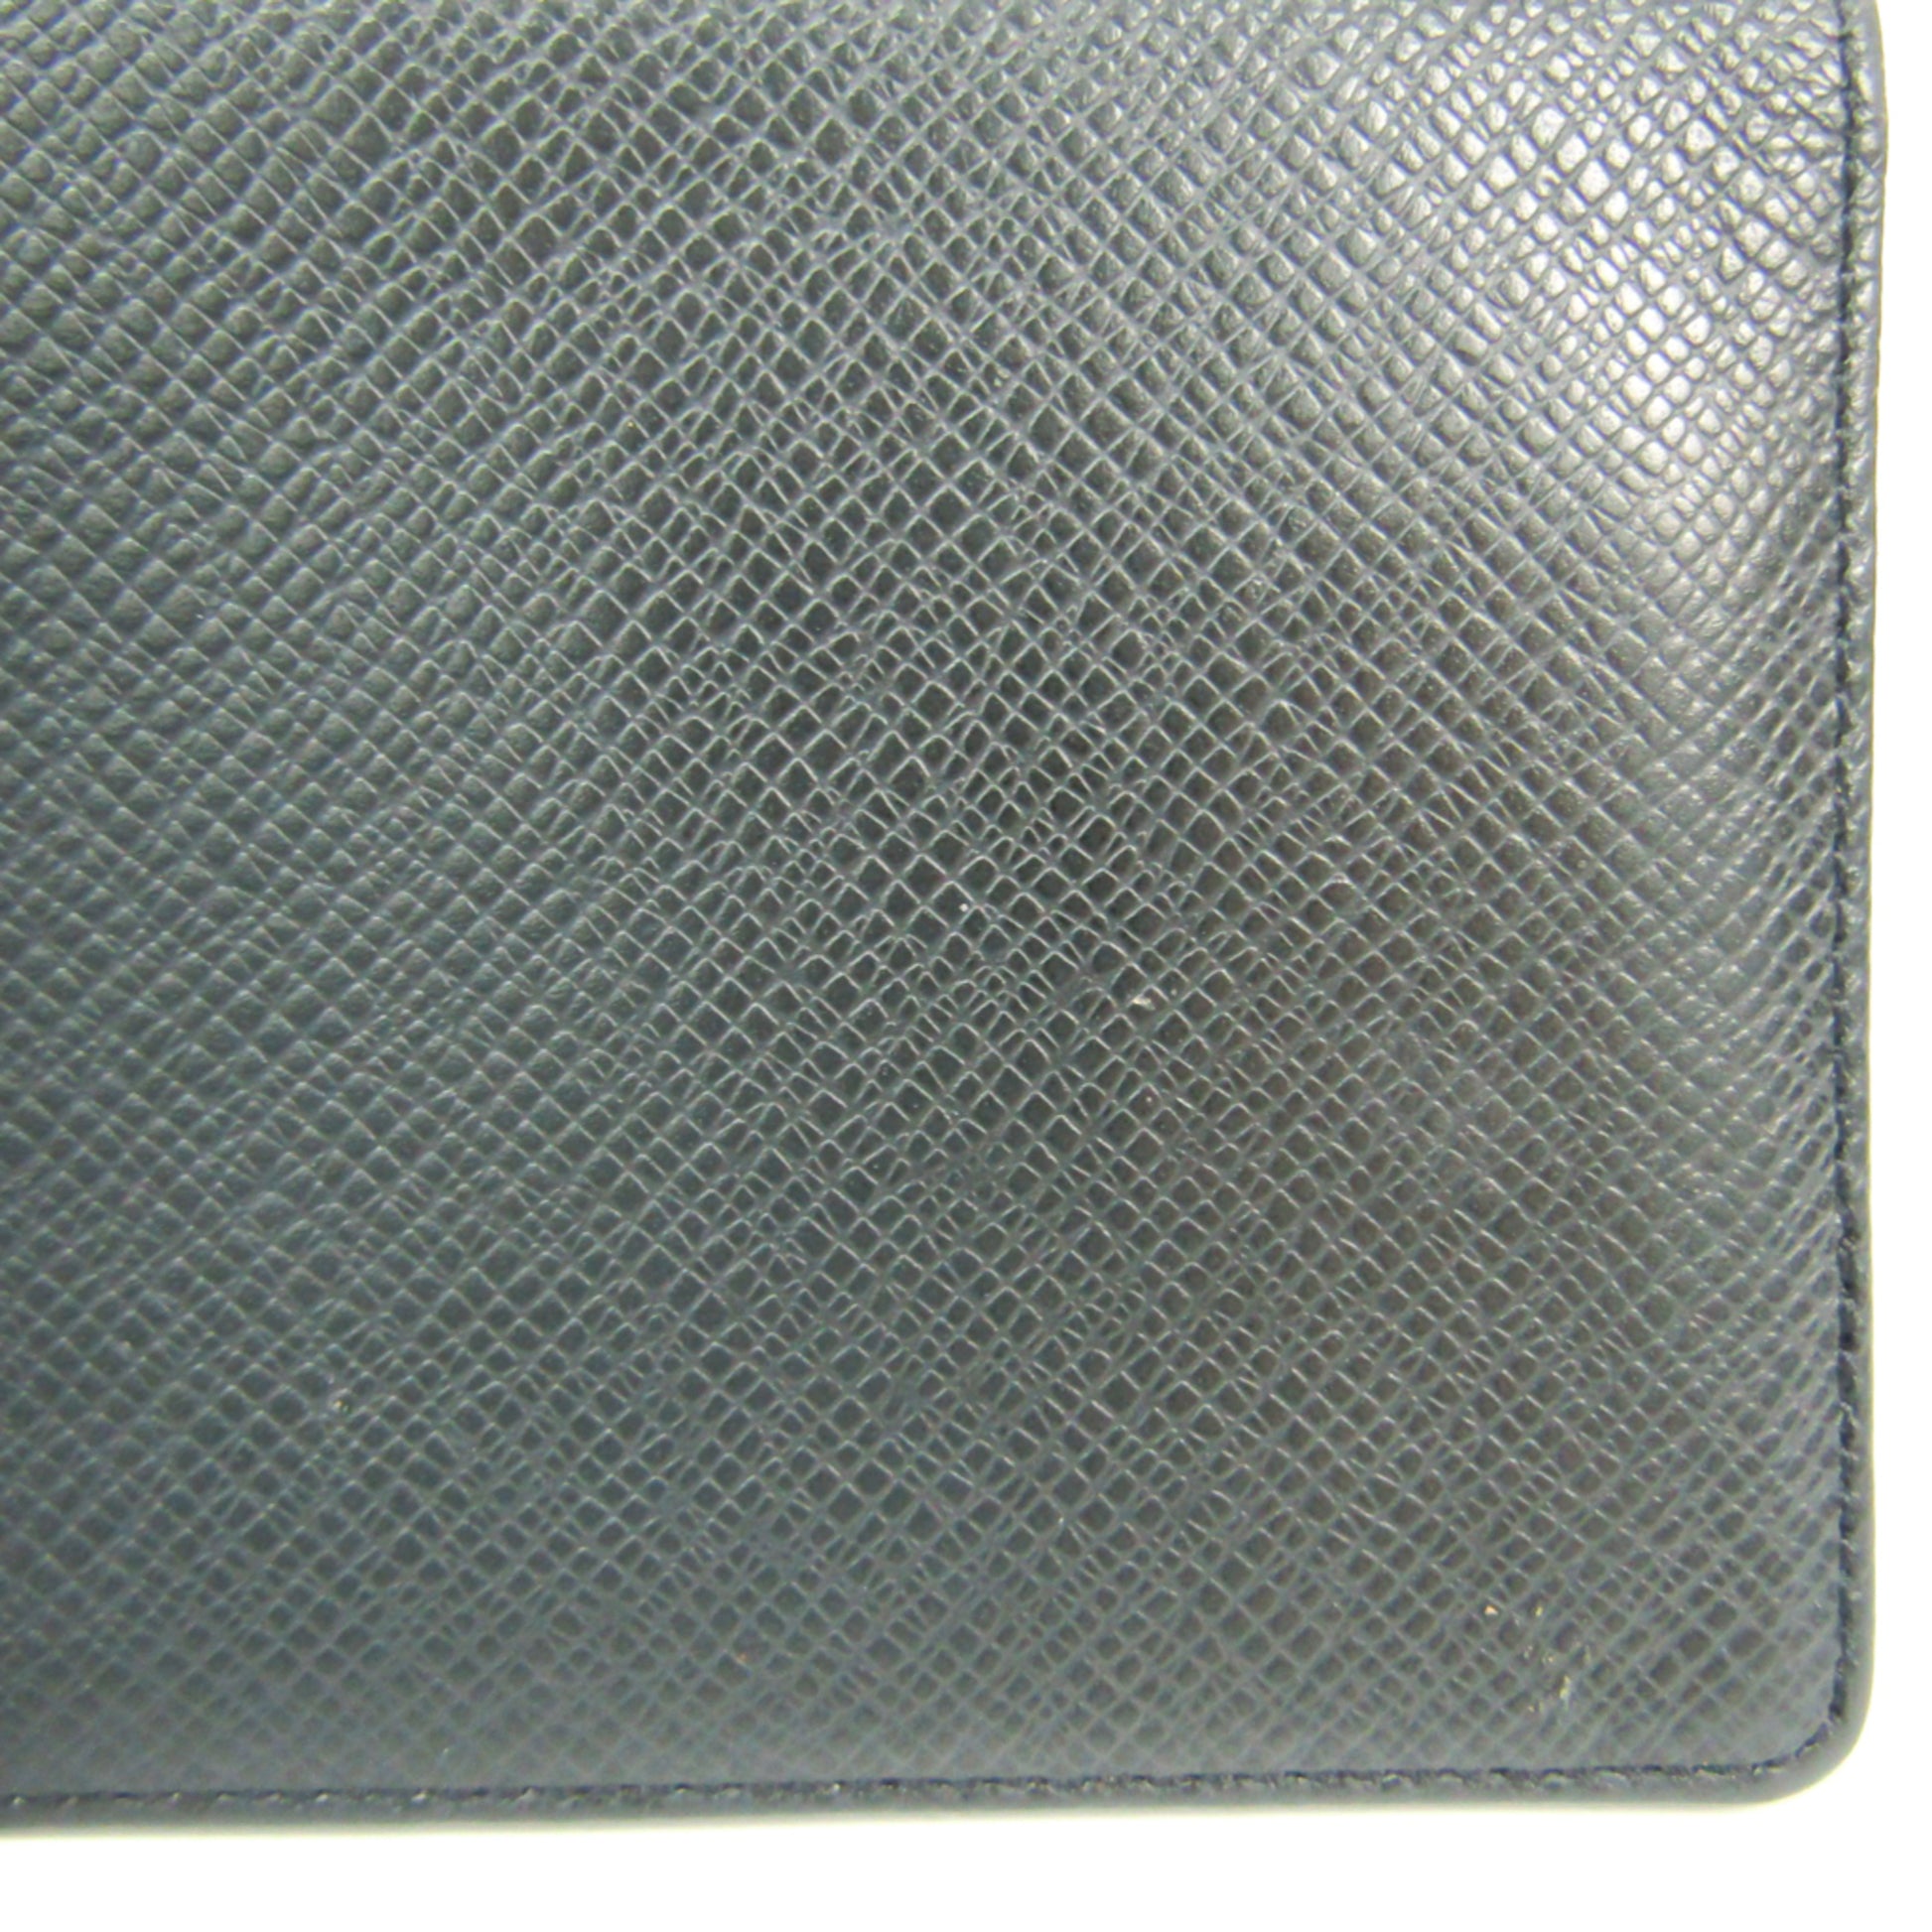 LOUIS VUITTON Louis Vuitton Long Wallet Taiga Porto Valor Cult Credit  Aldwards Leather M30392 Men's